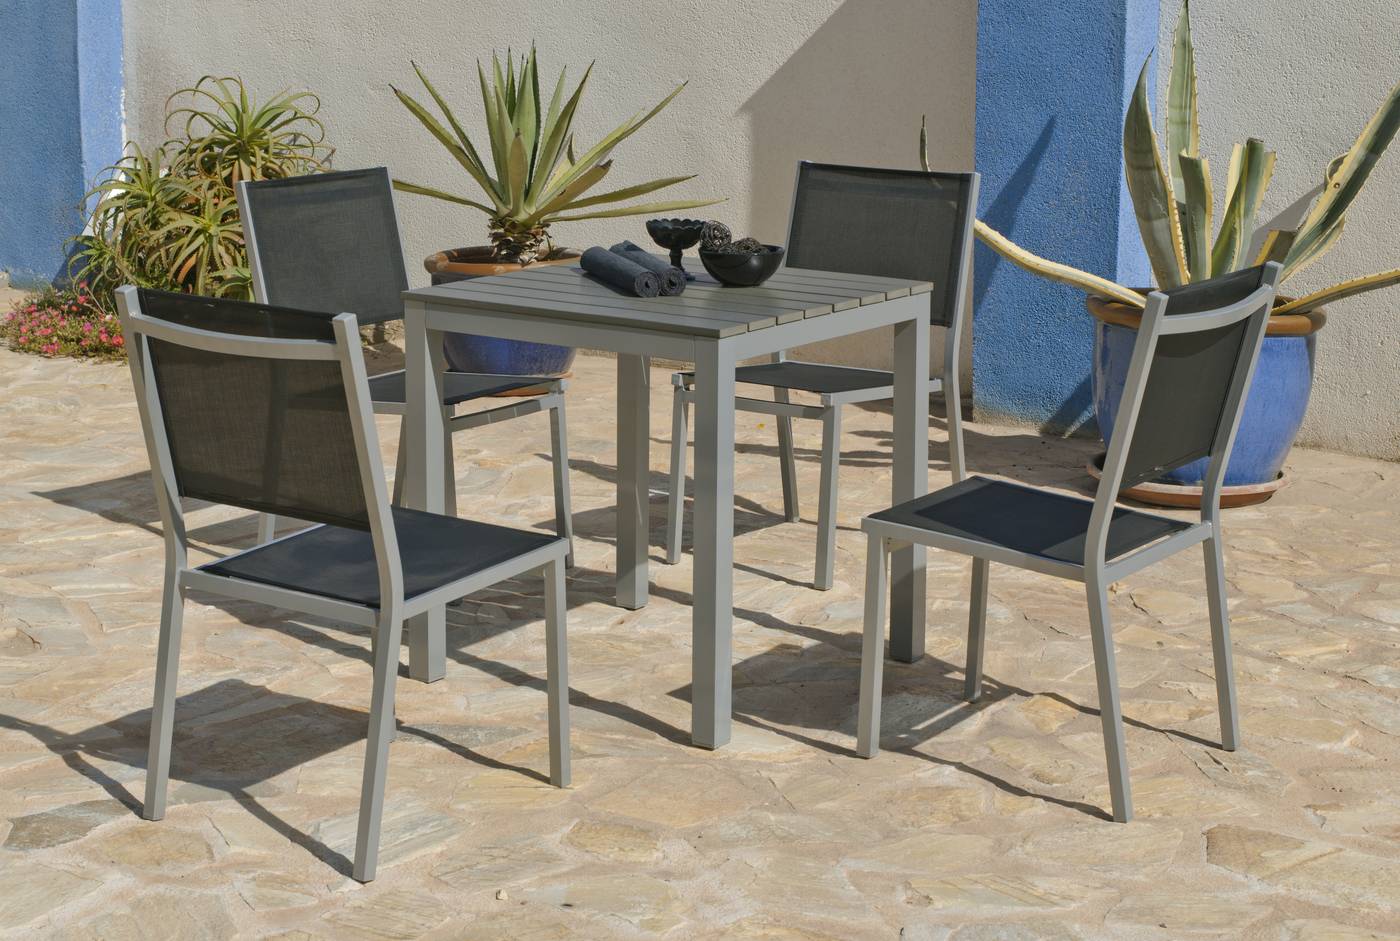 Conjunto aluminio color plata: mesa de 70 cm. con tablero poliwood y 4 sillas